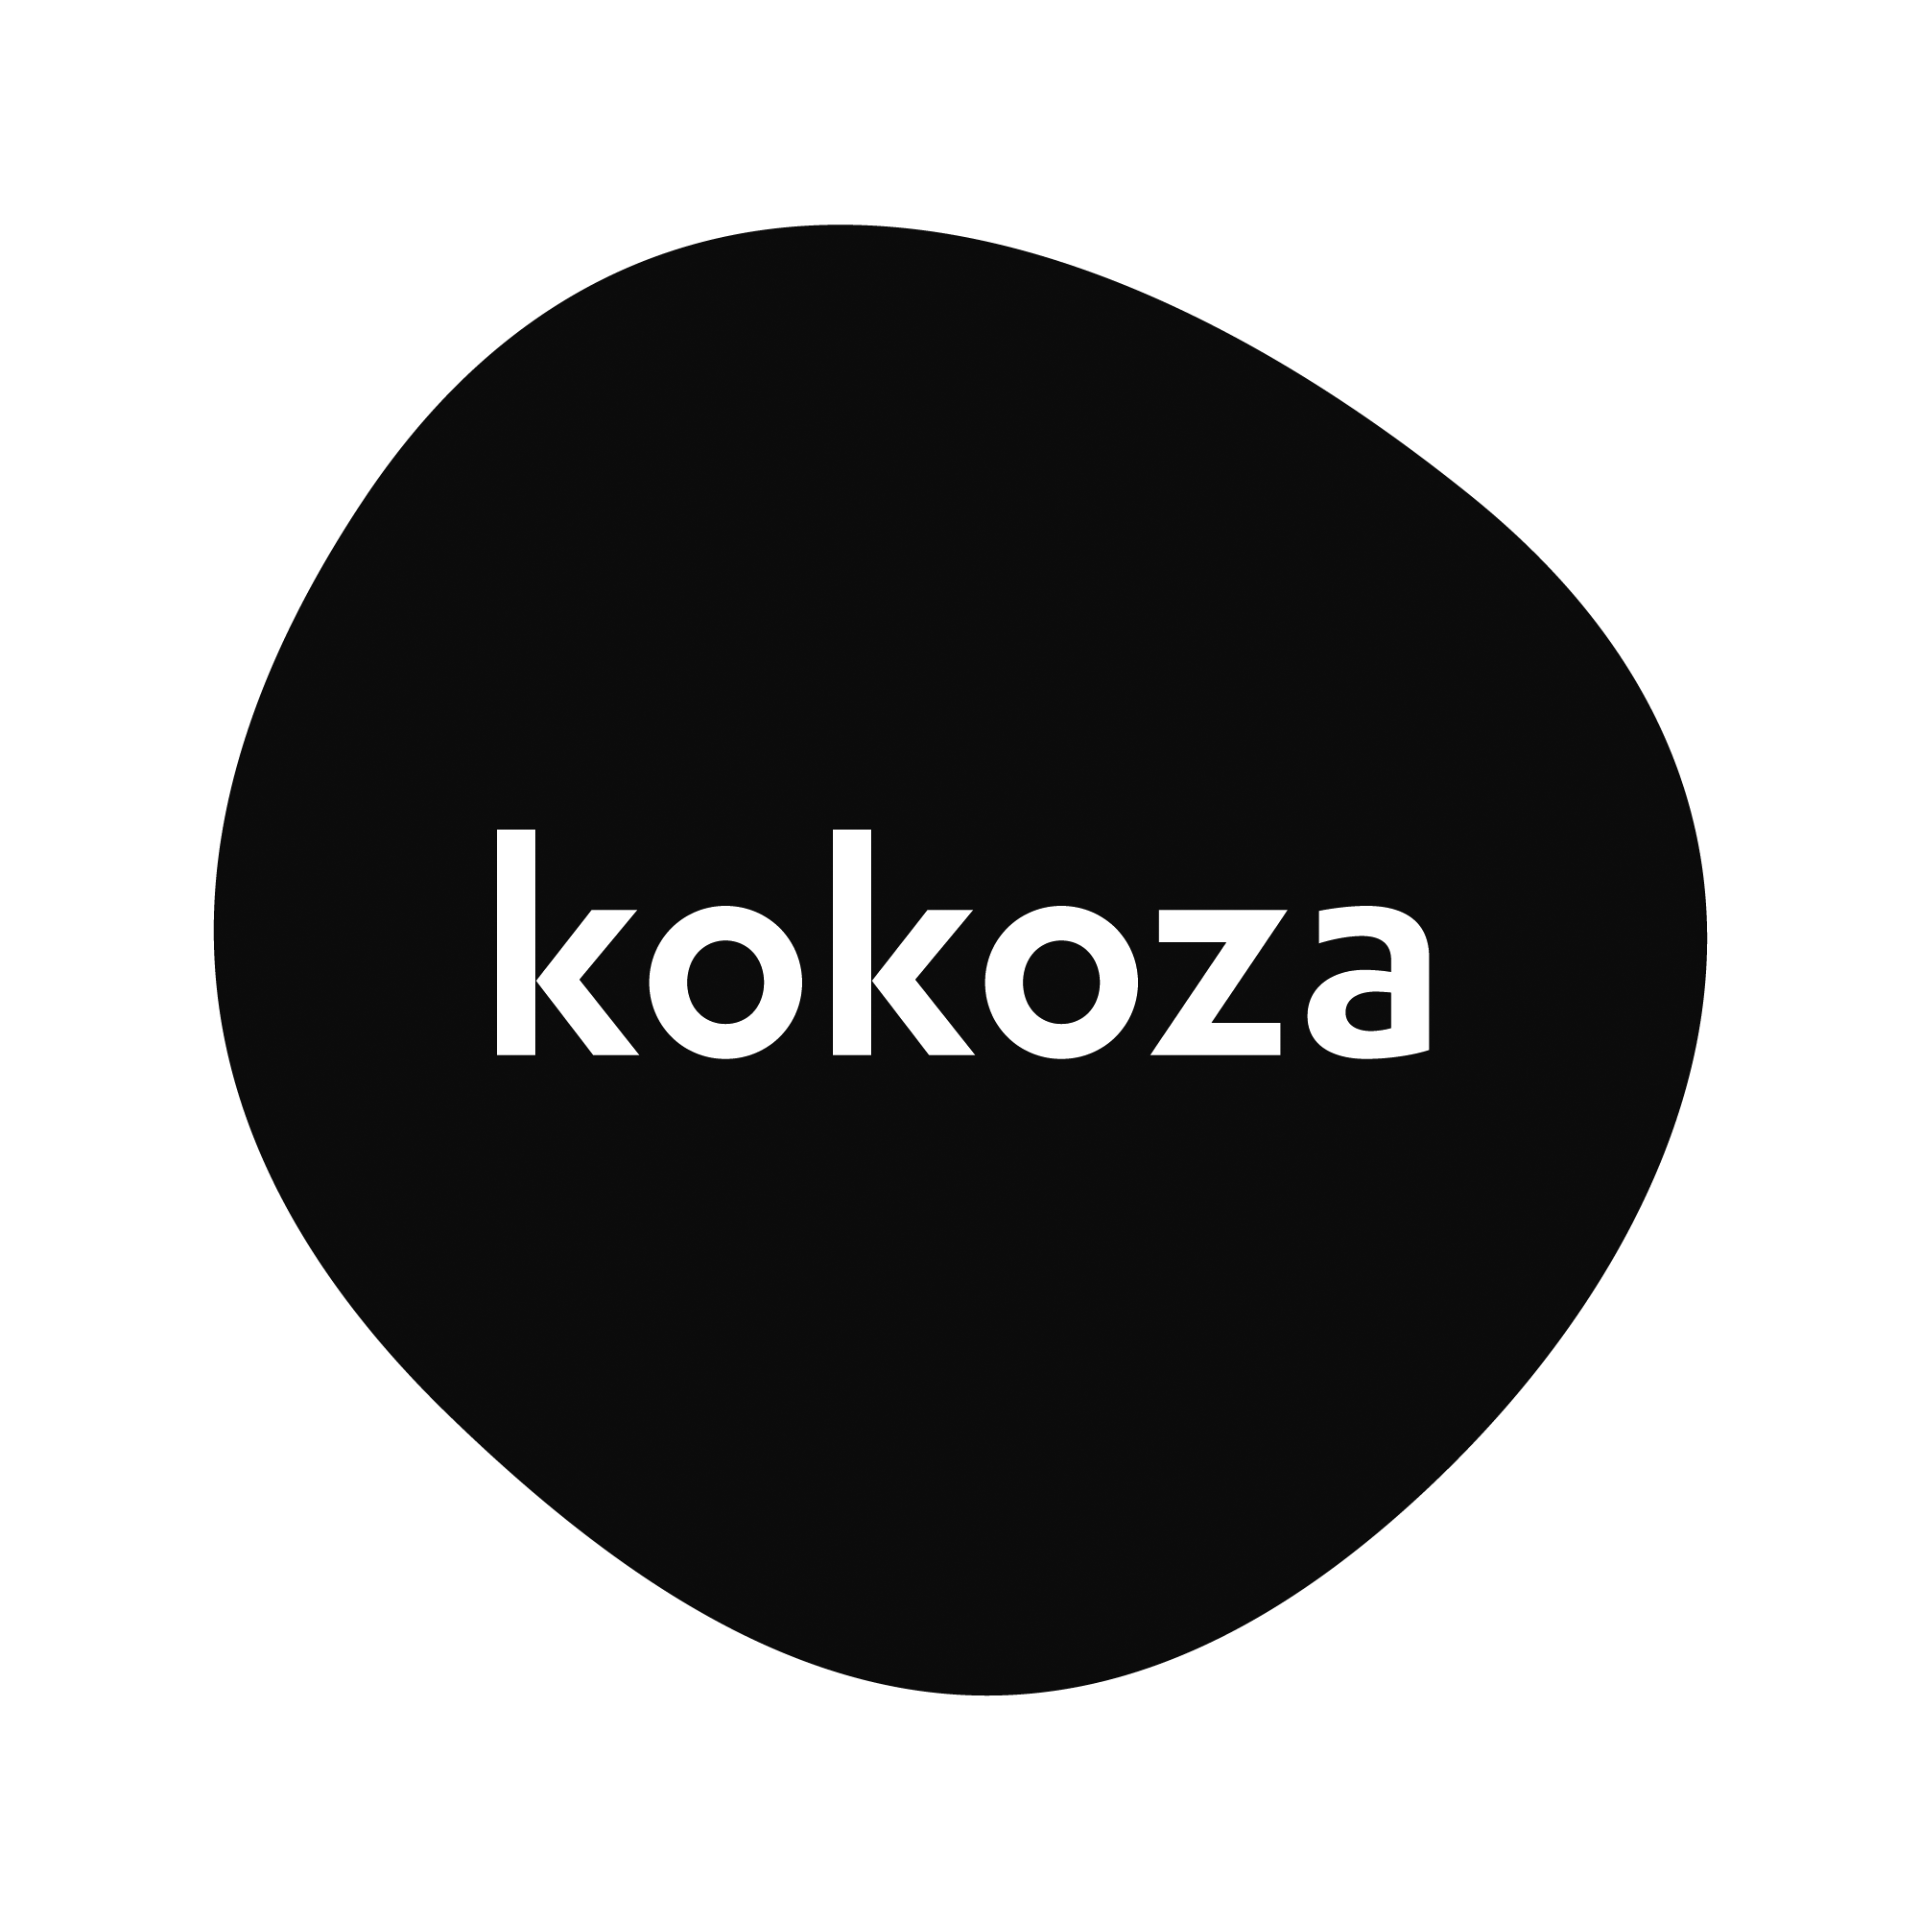 kokoza-client-sype-sound-post-production-studio-prague-czech-01.png